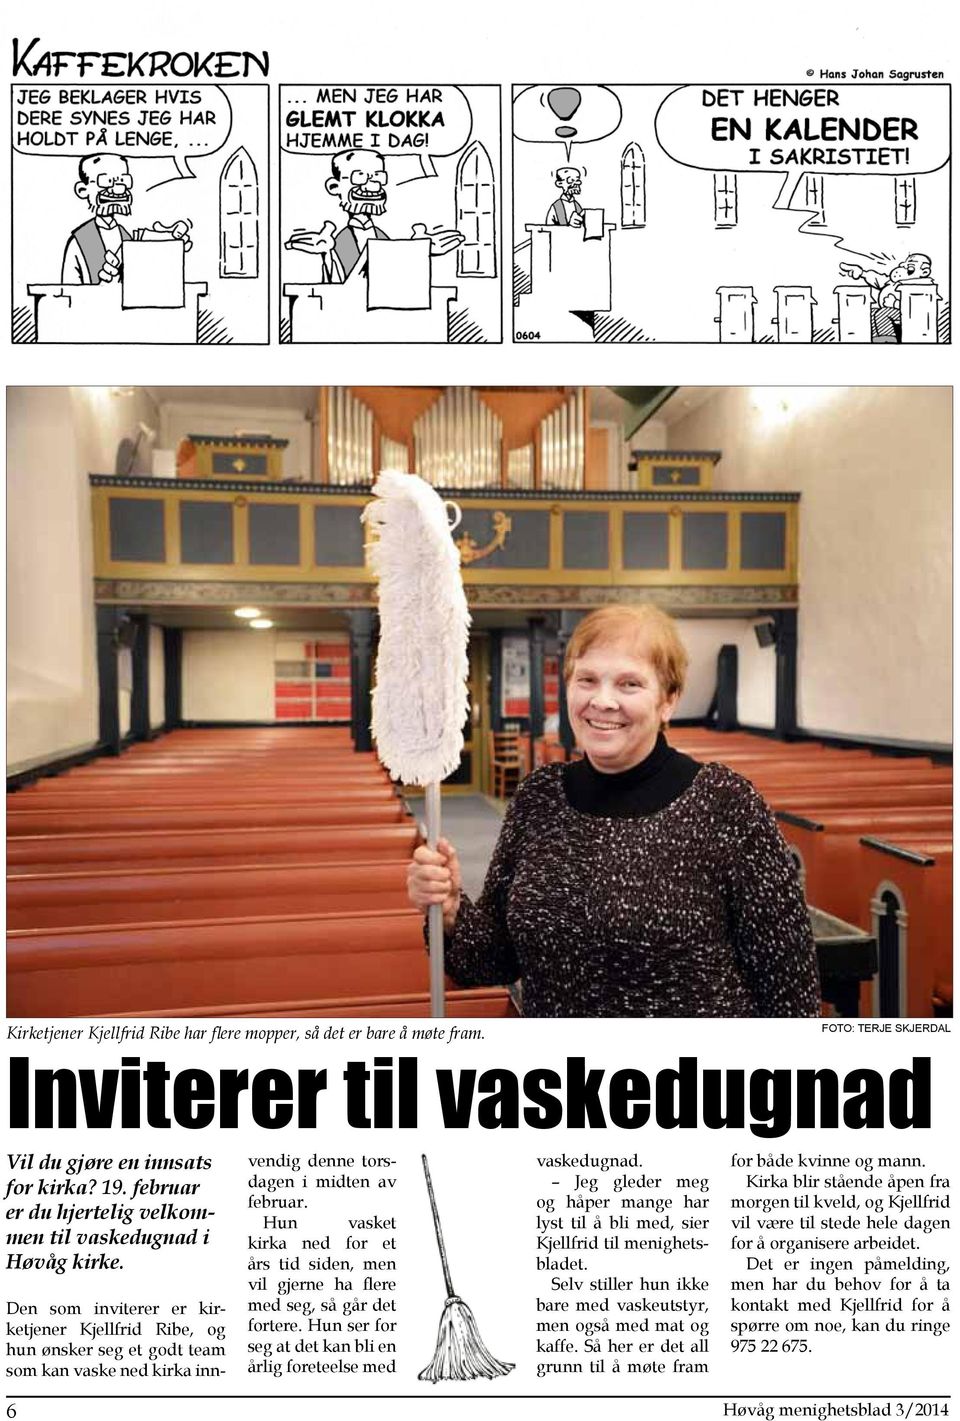 Den som inviterer er kirketjener Kjellfrid Ribe, og hun ønsker seg et godt team som kan vaske ned kirka innvendig denne torsdagen i midten av februar.